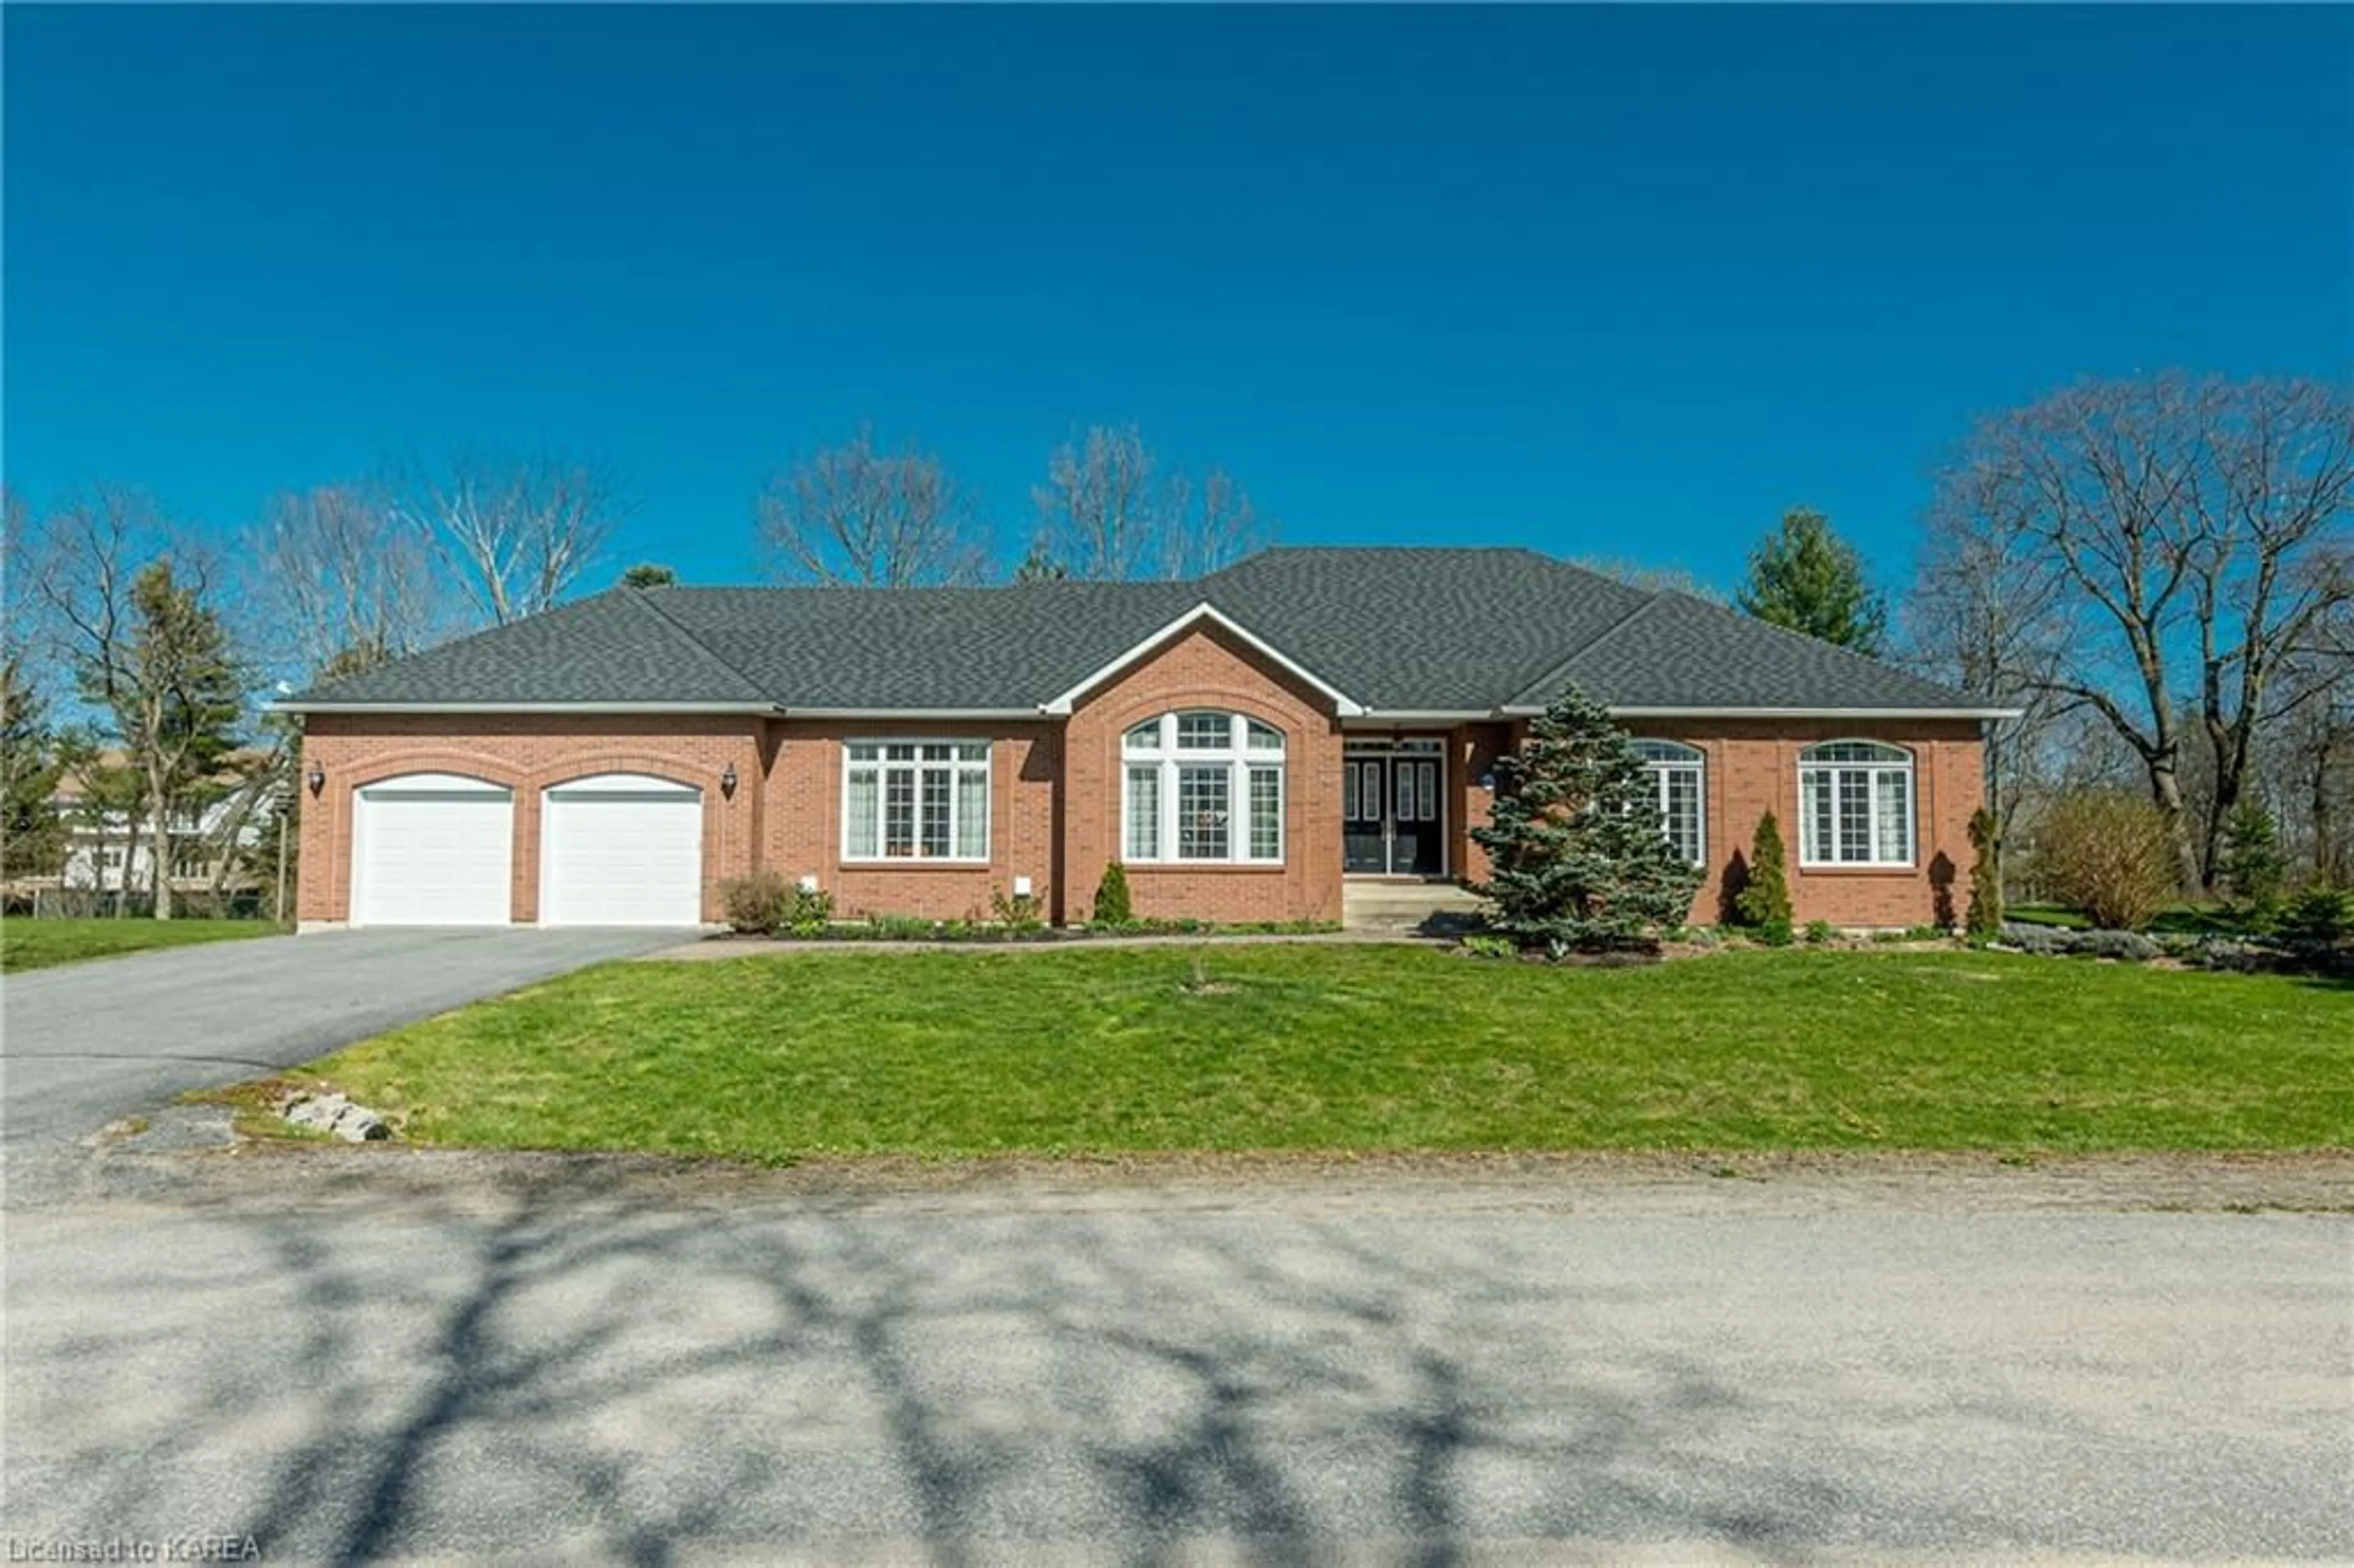 Frontside or backside of a home for 651 Woodland Pl, Kingston Ontario K7L 4V1